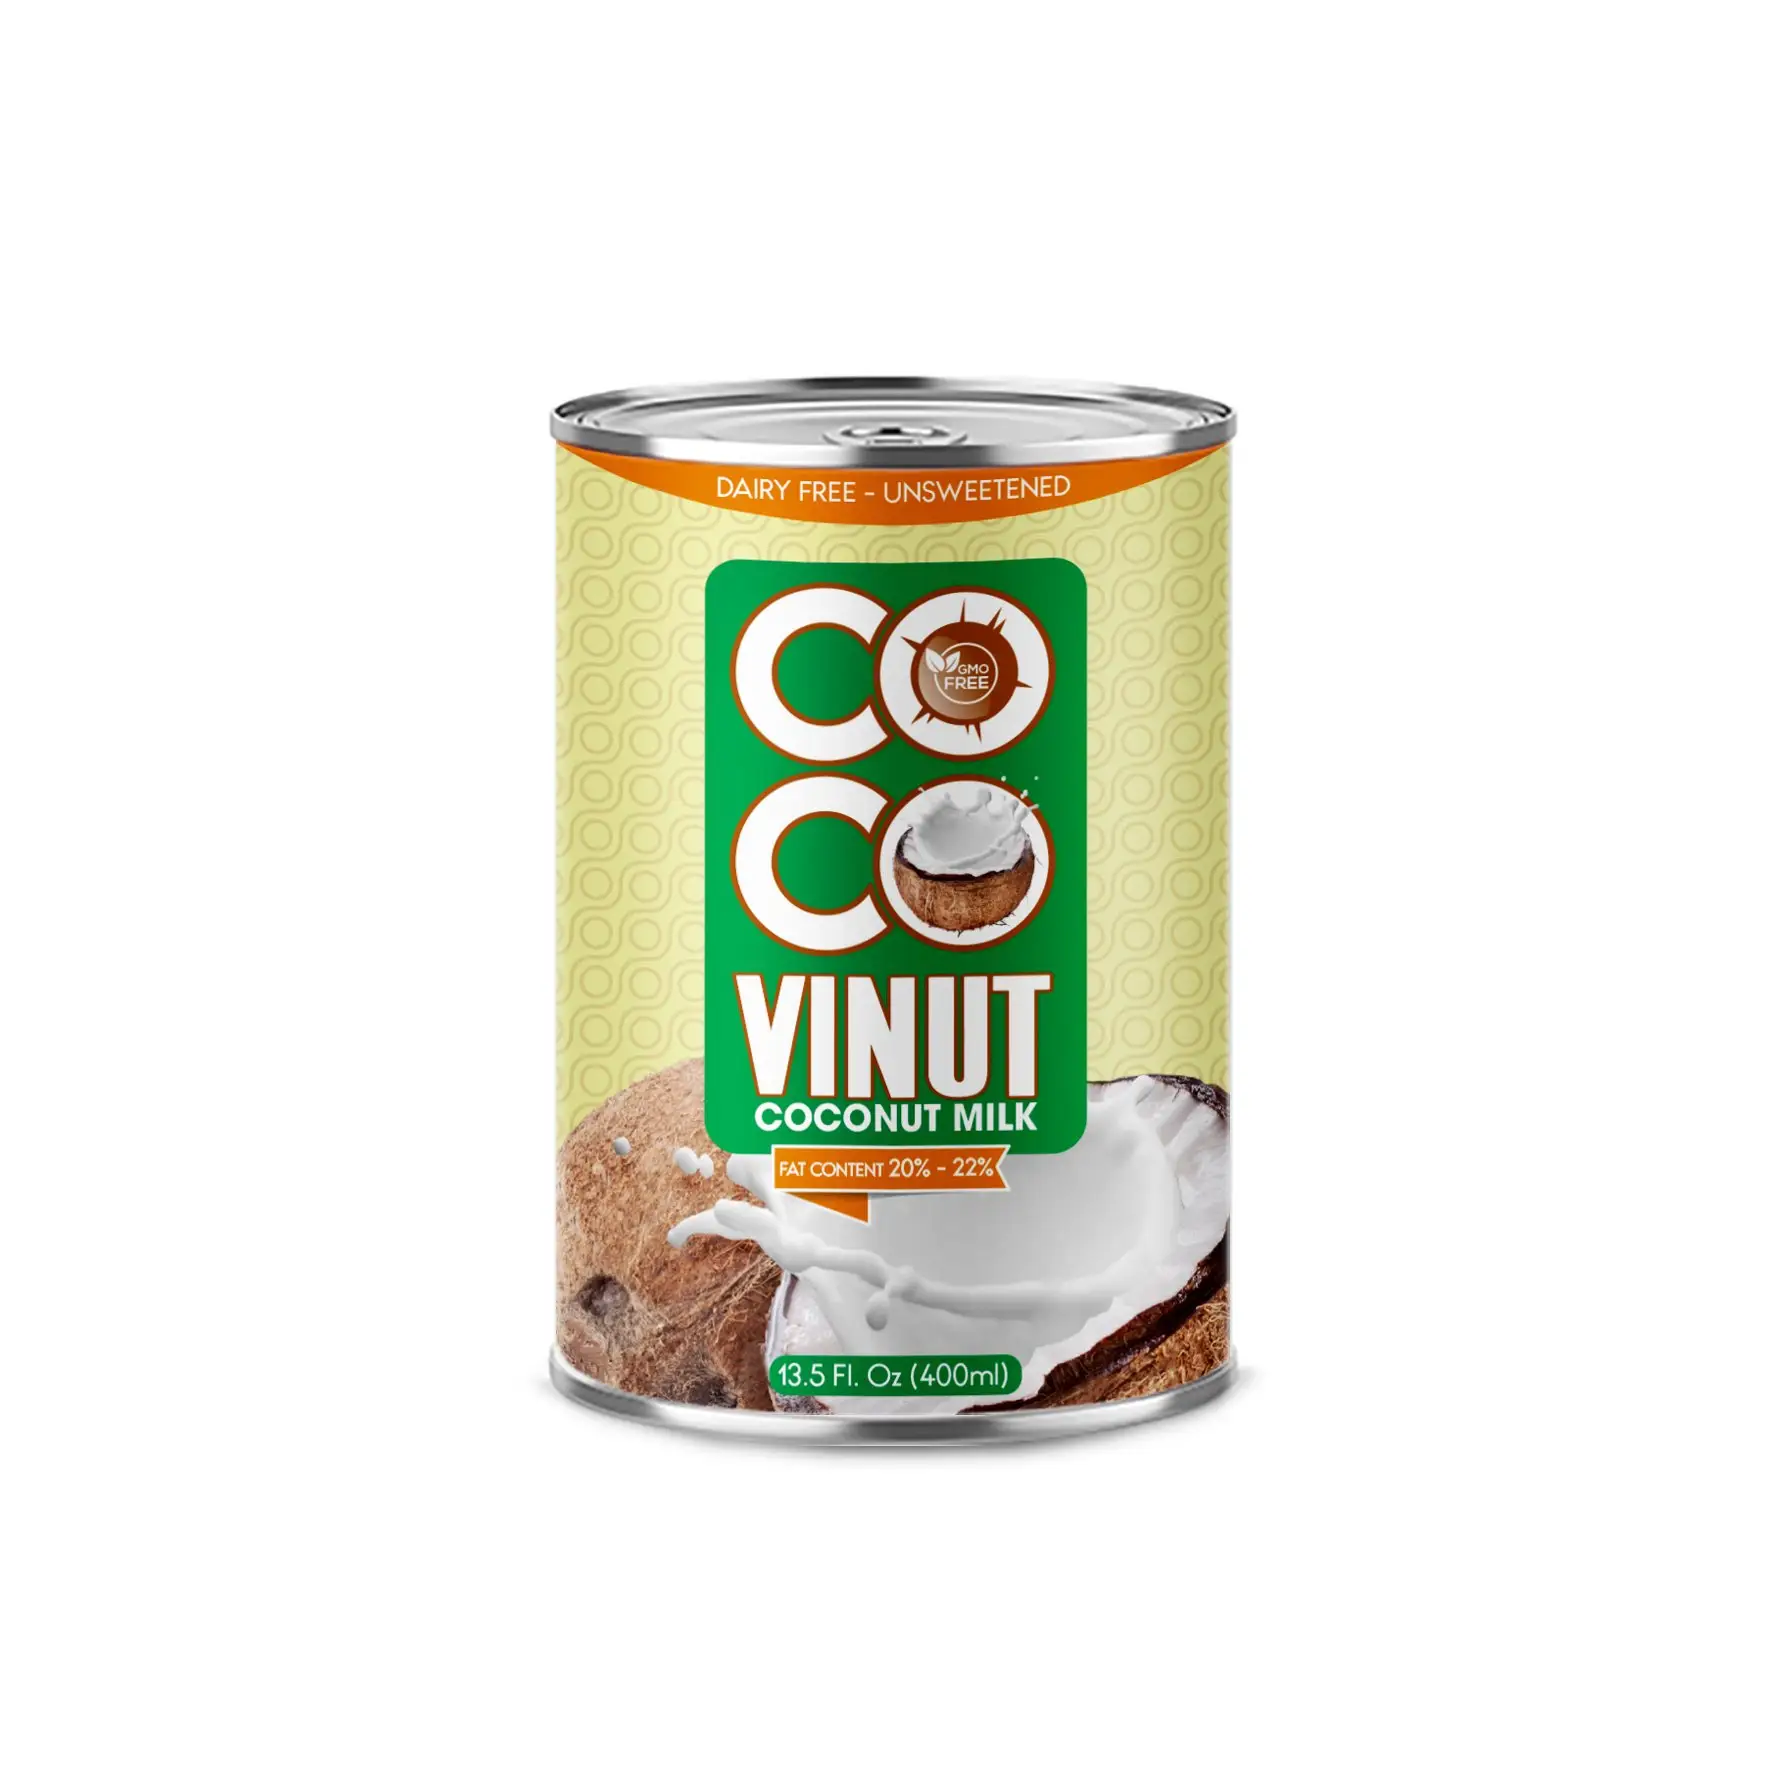 400mlは20-22% の脂肪ベトナム流通工場でココナッツミルクを調理するためにVINUTココナッツミルクを缶詰にすることができます